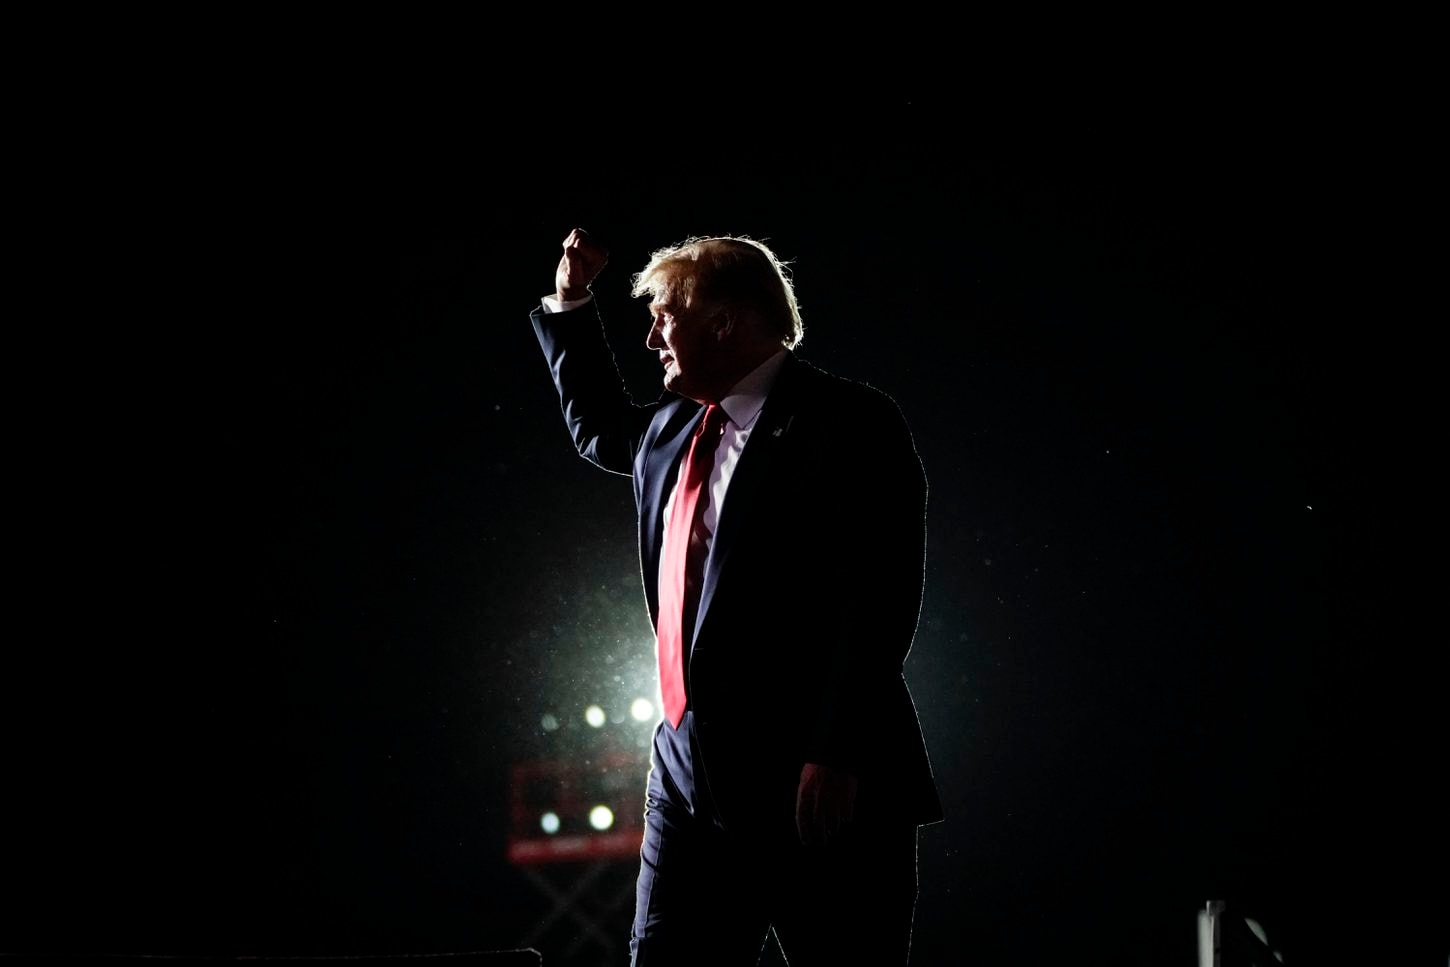 Tạm biệt Donald Trump: Khép lại 4 năm khác biệt trong lịch sử nước Mỹ - Ảnh 23.